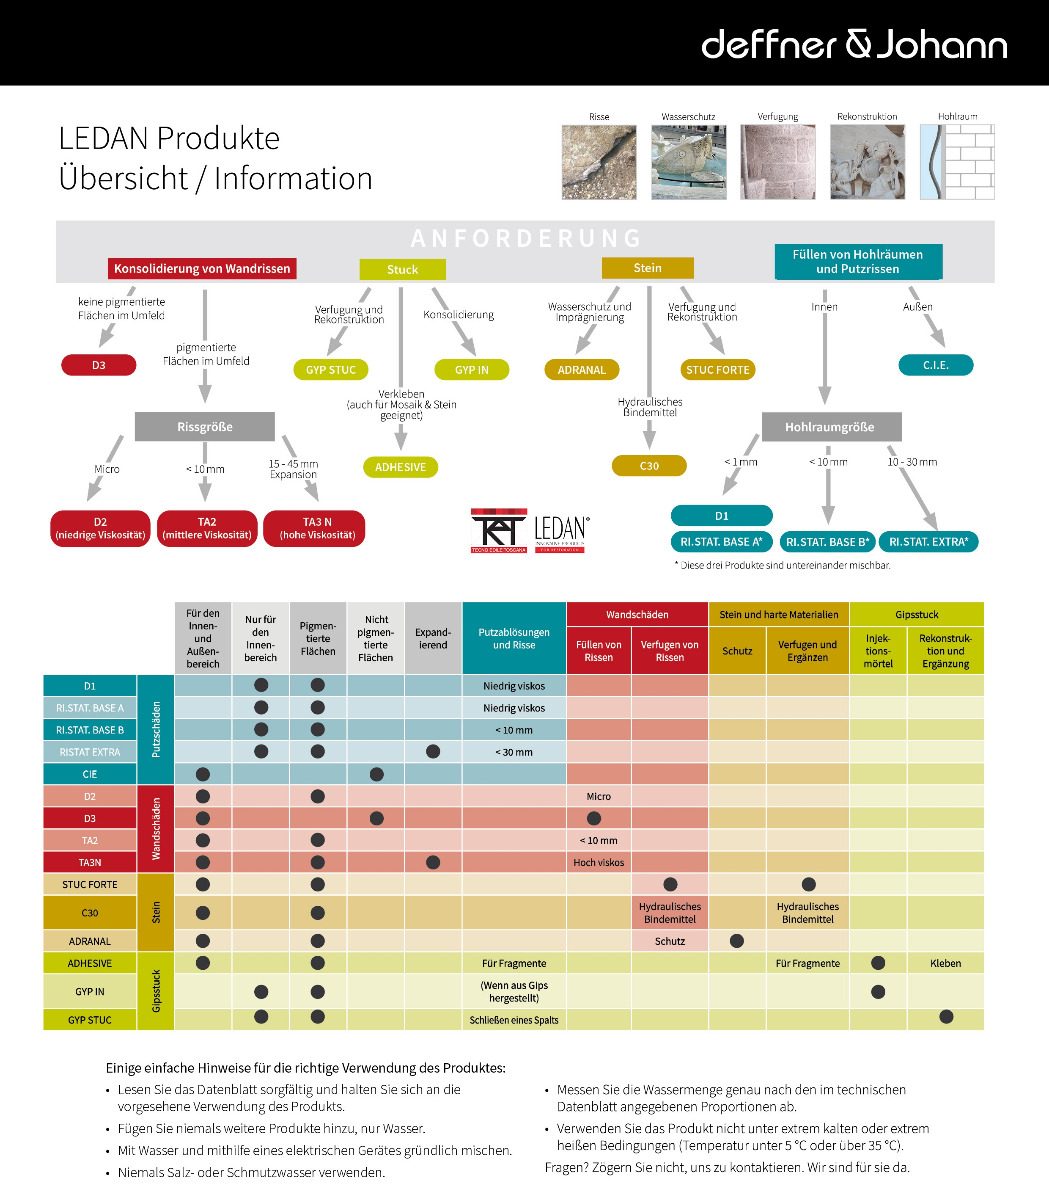 LEDAN Produkte Übersicht und Information